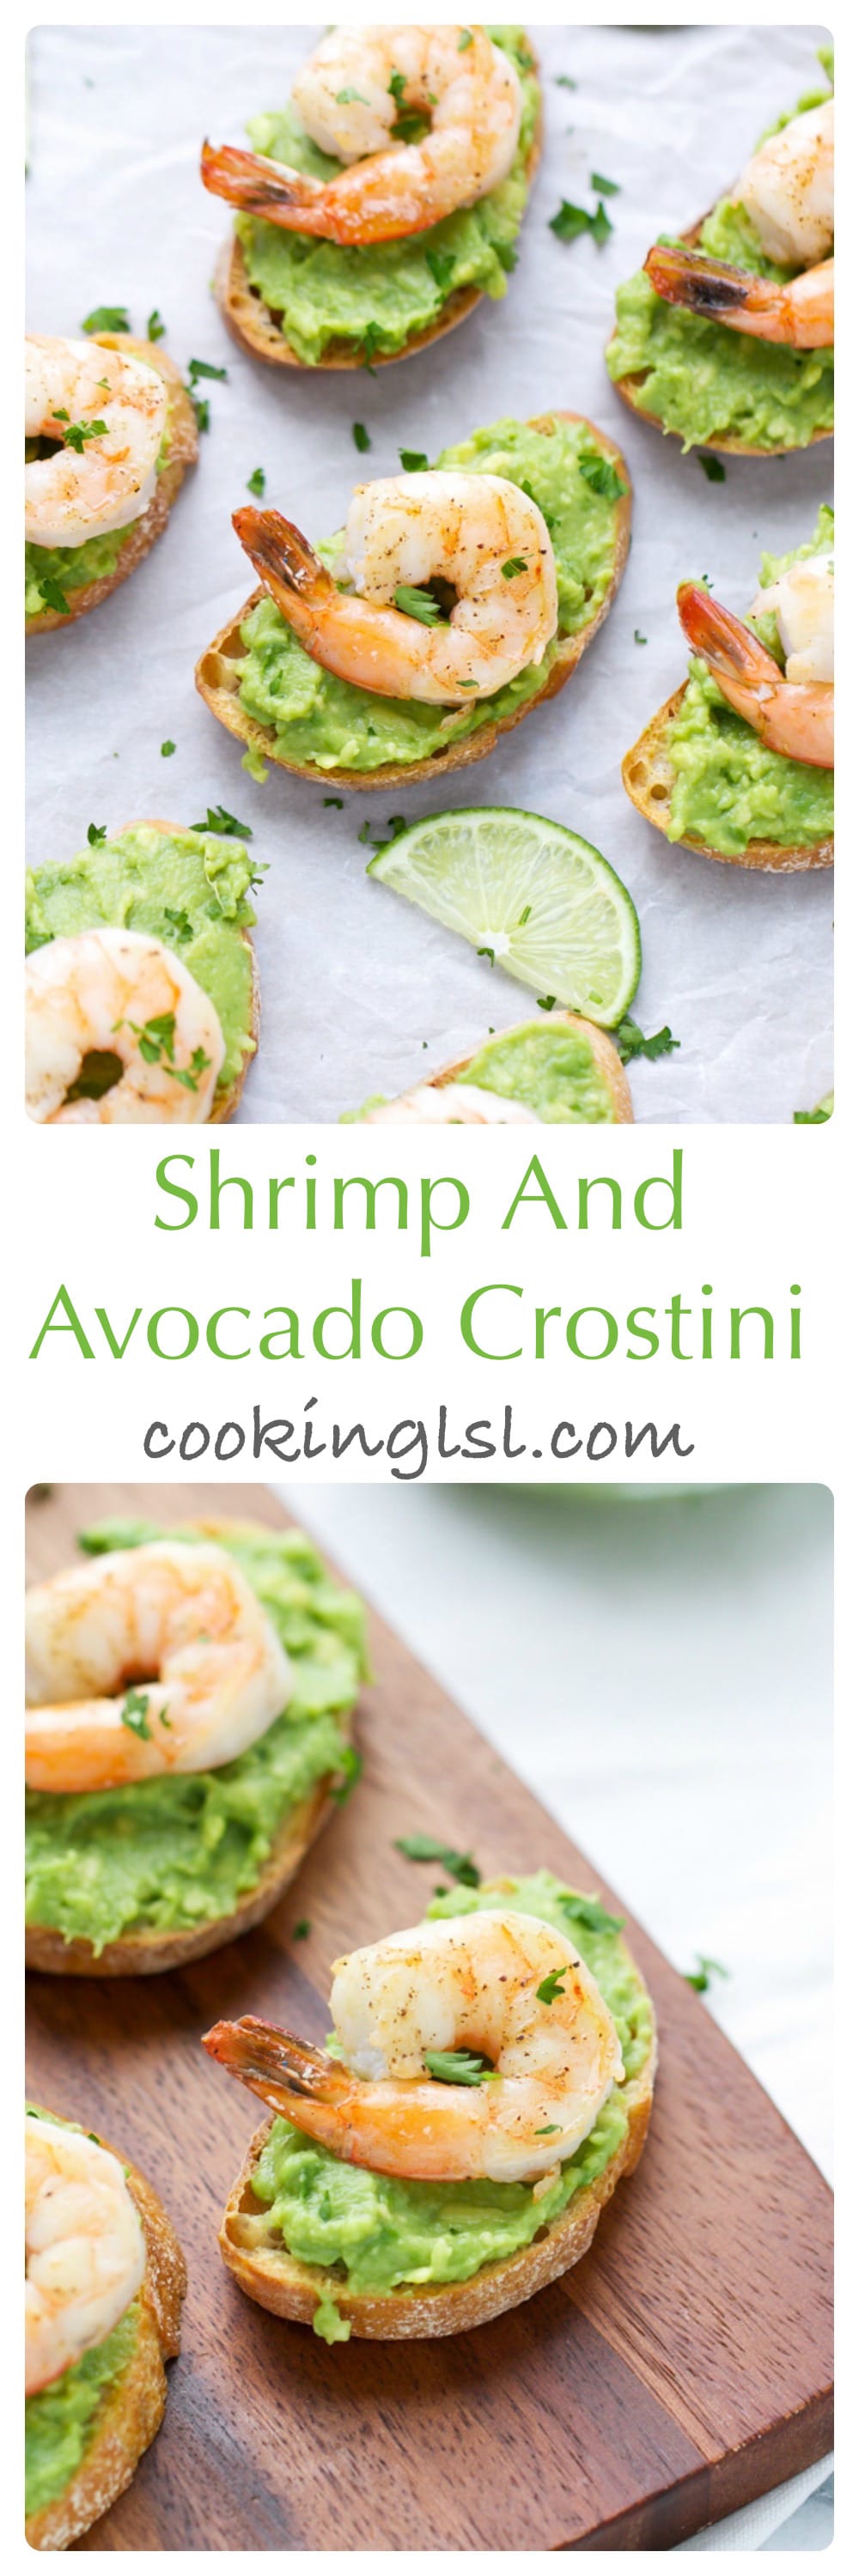 Avocado And Shrimp Crostini Recipe